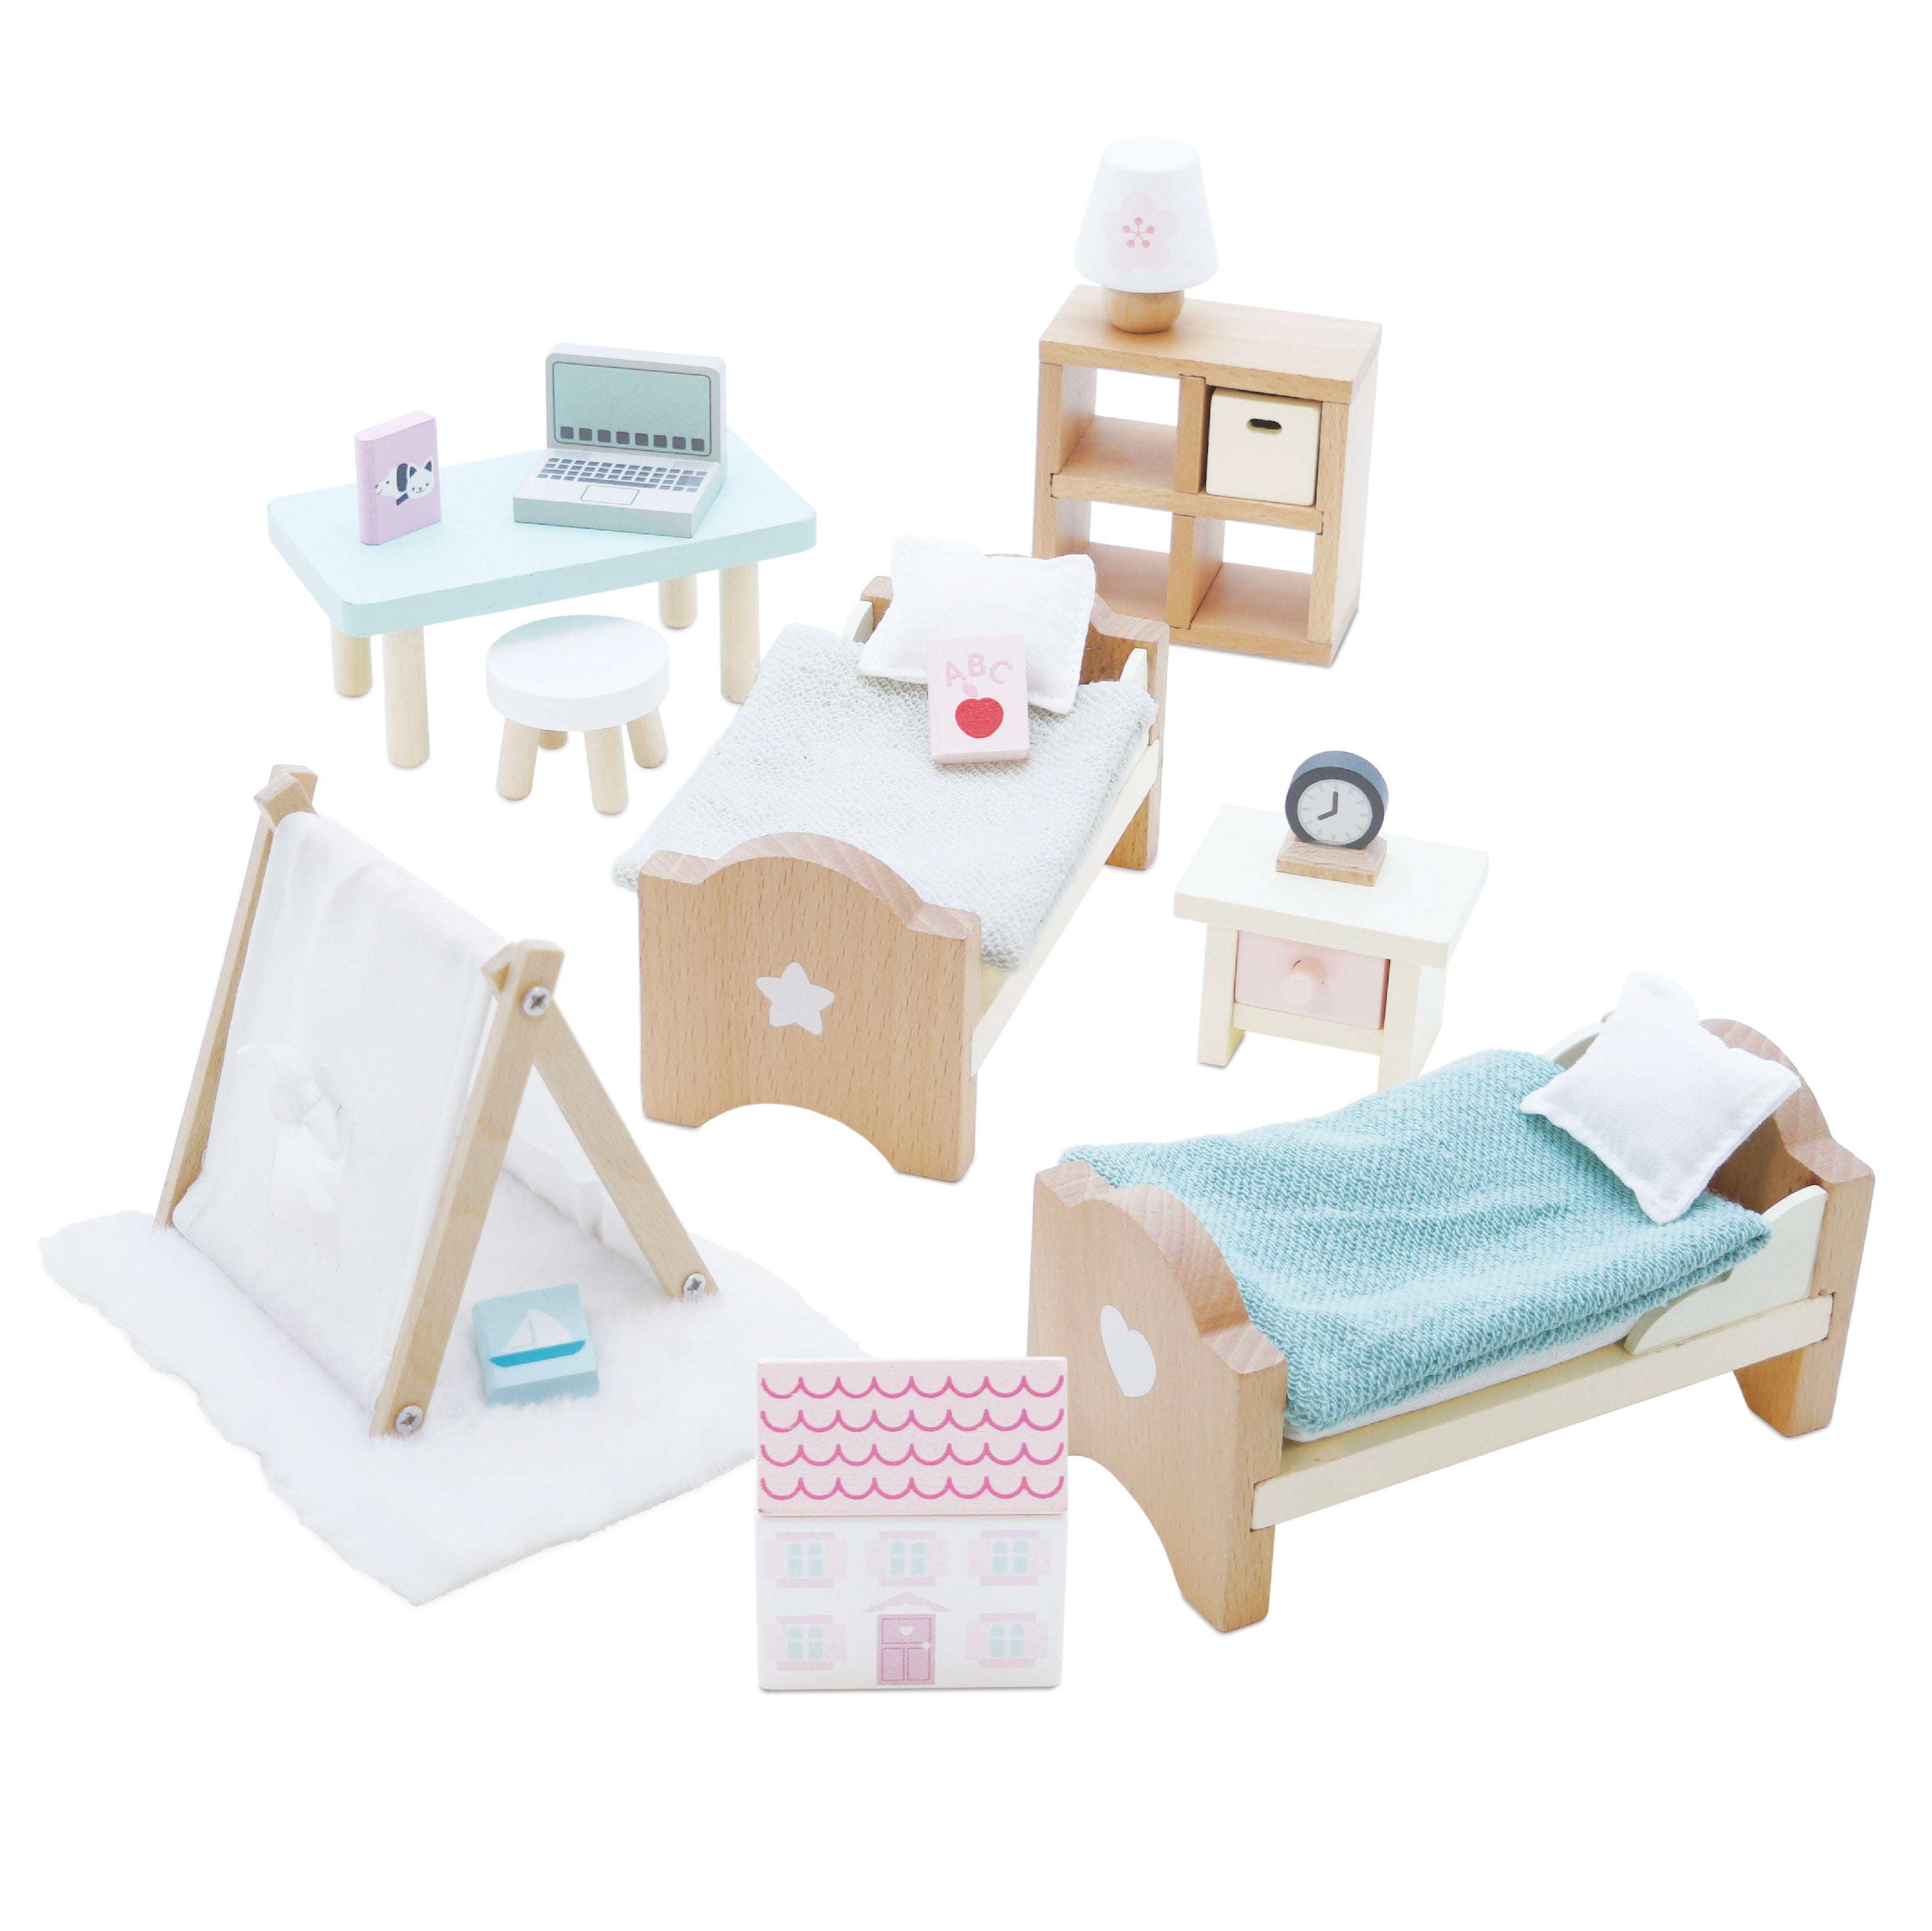 Doll House Children's Bedroom